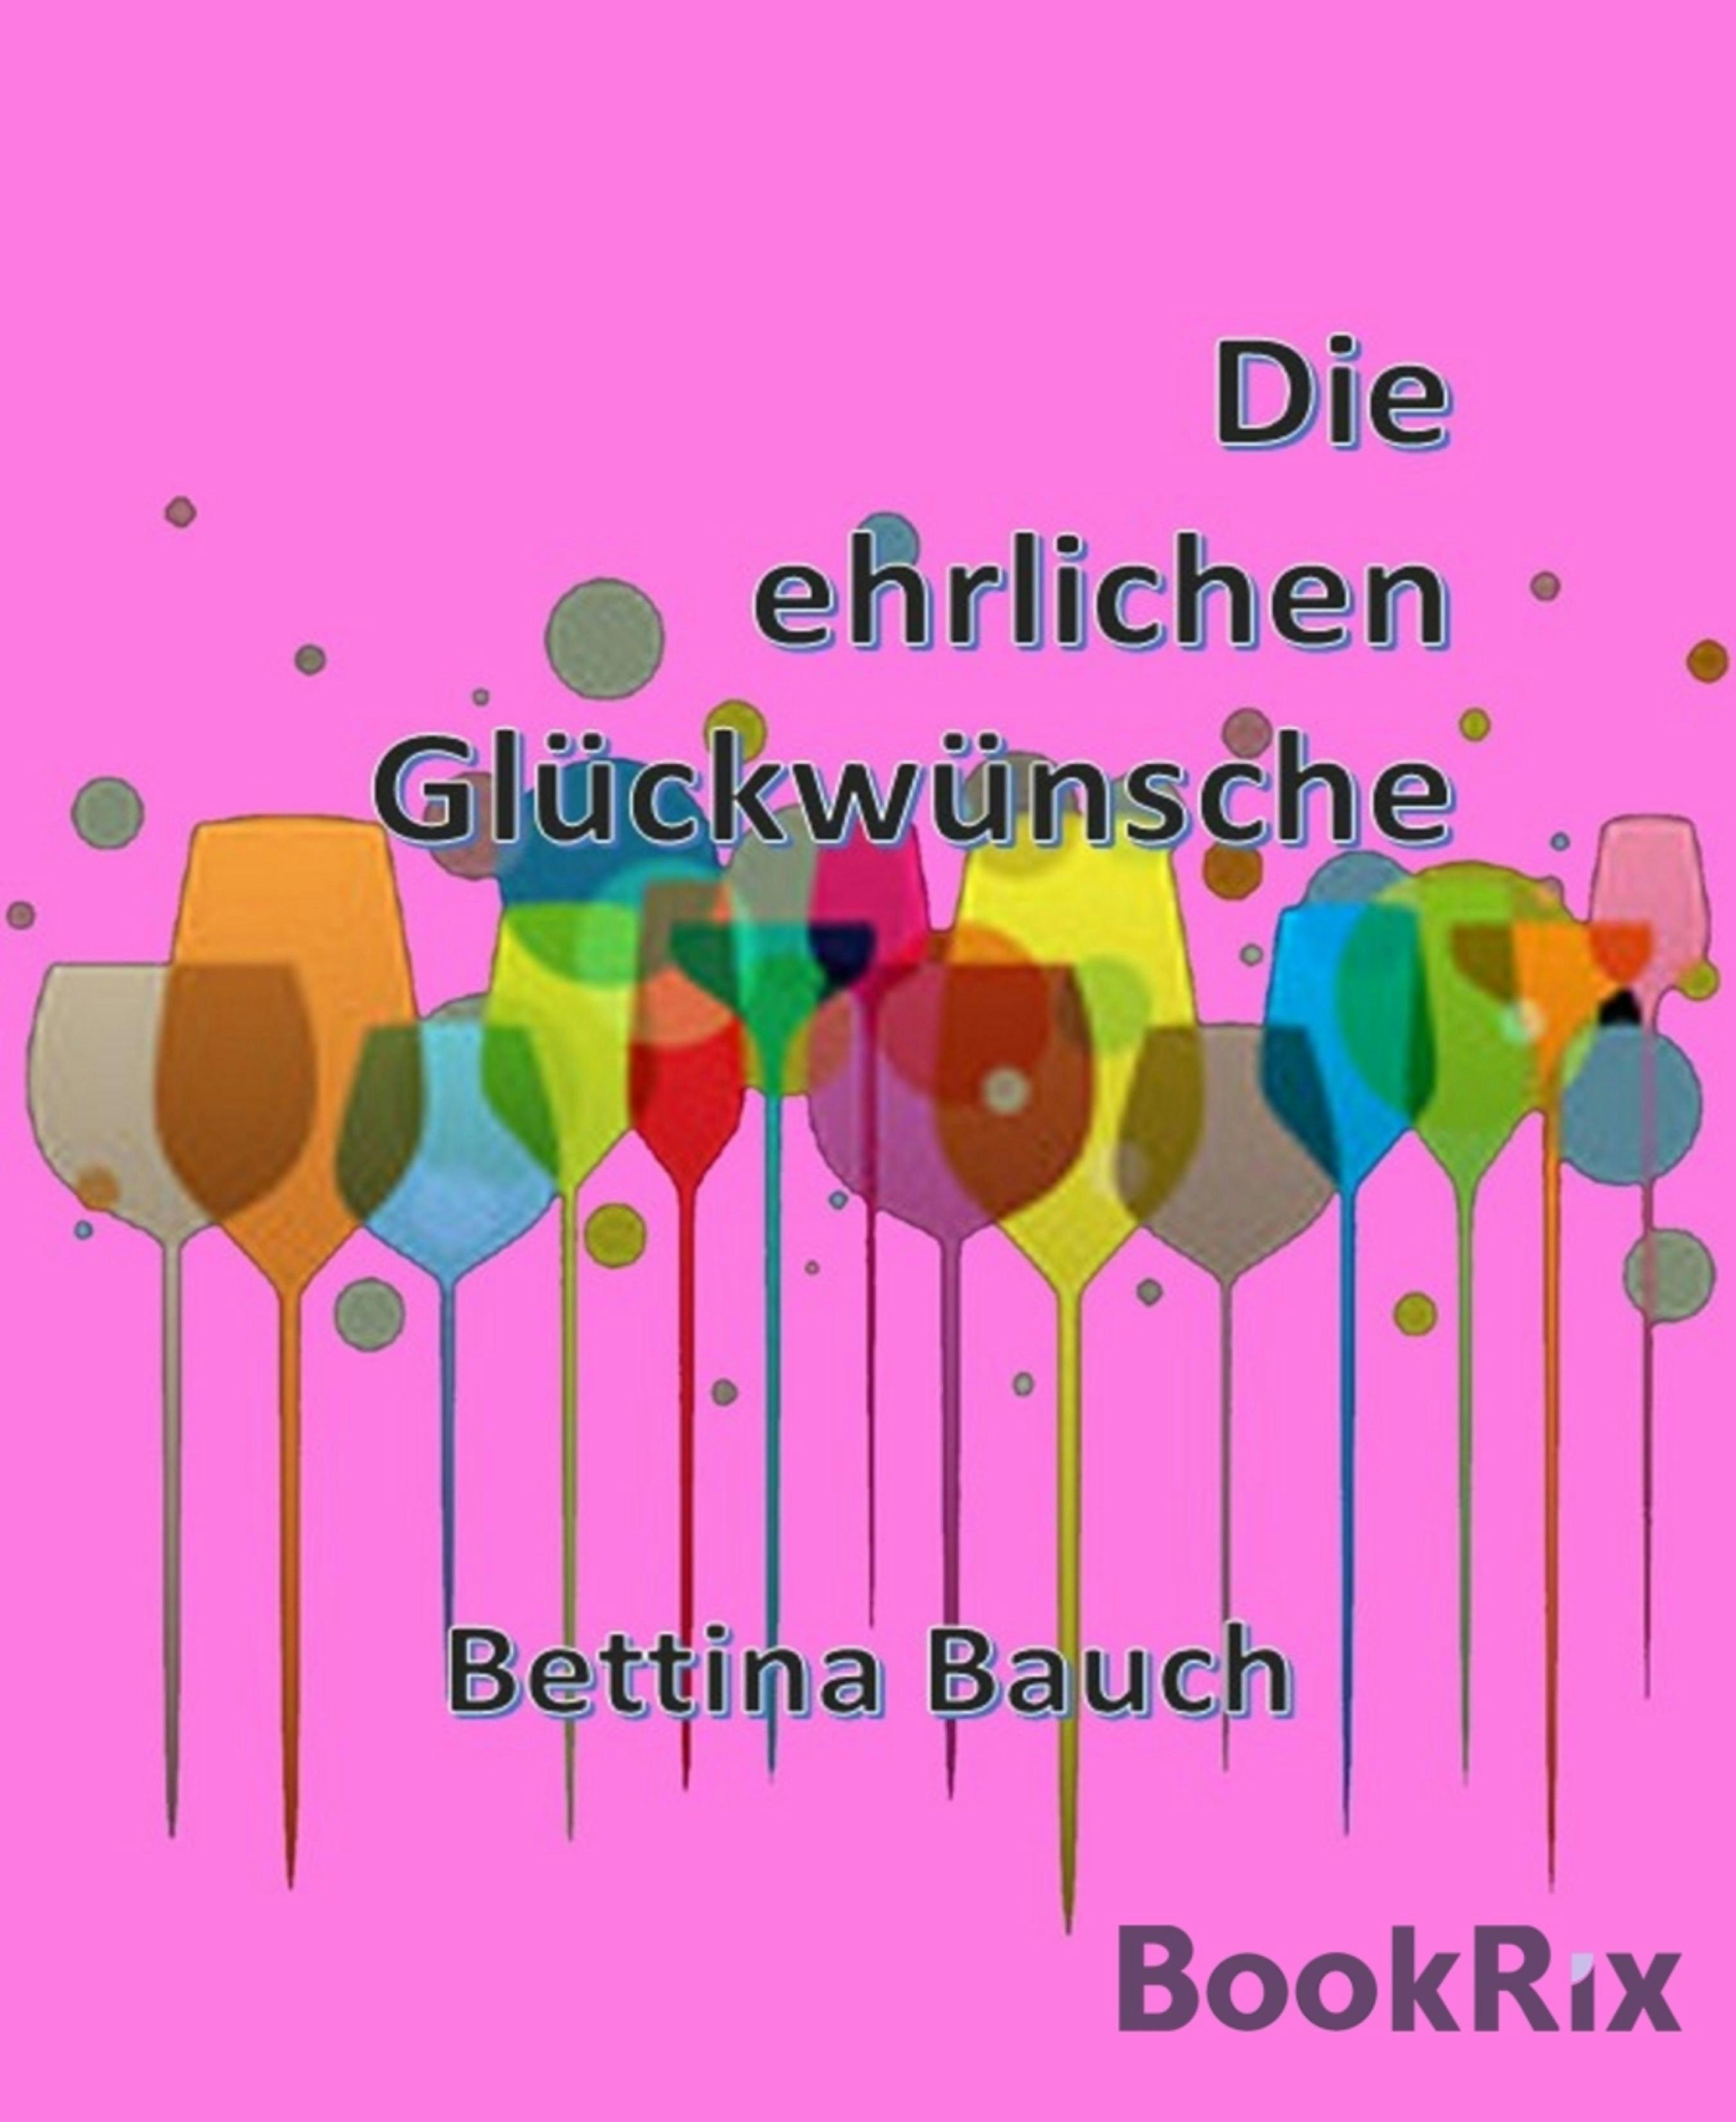 Die ehrlichen Glückwünsche - Bettina Bauch